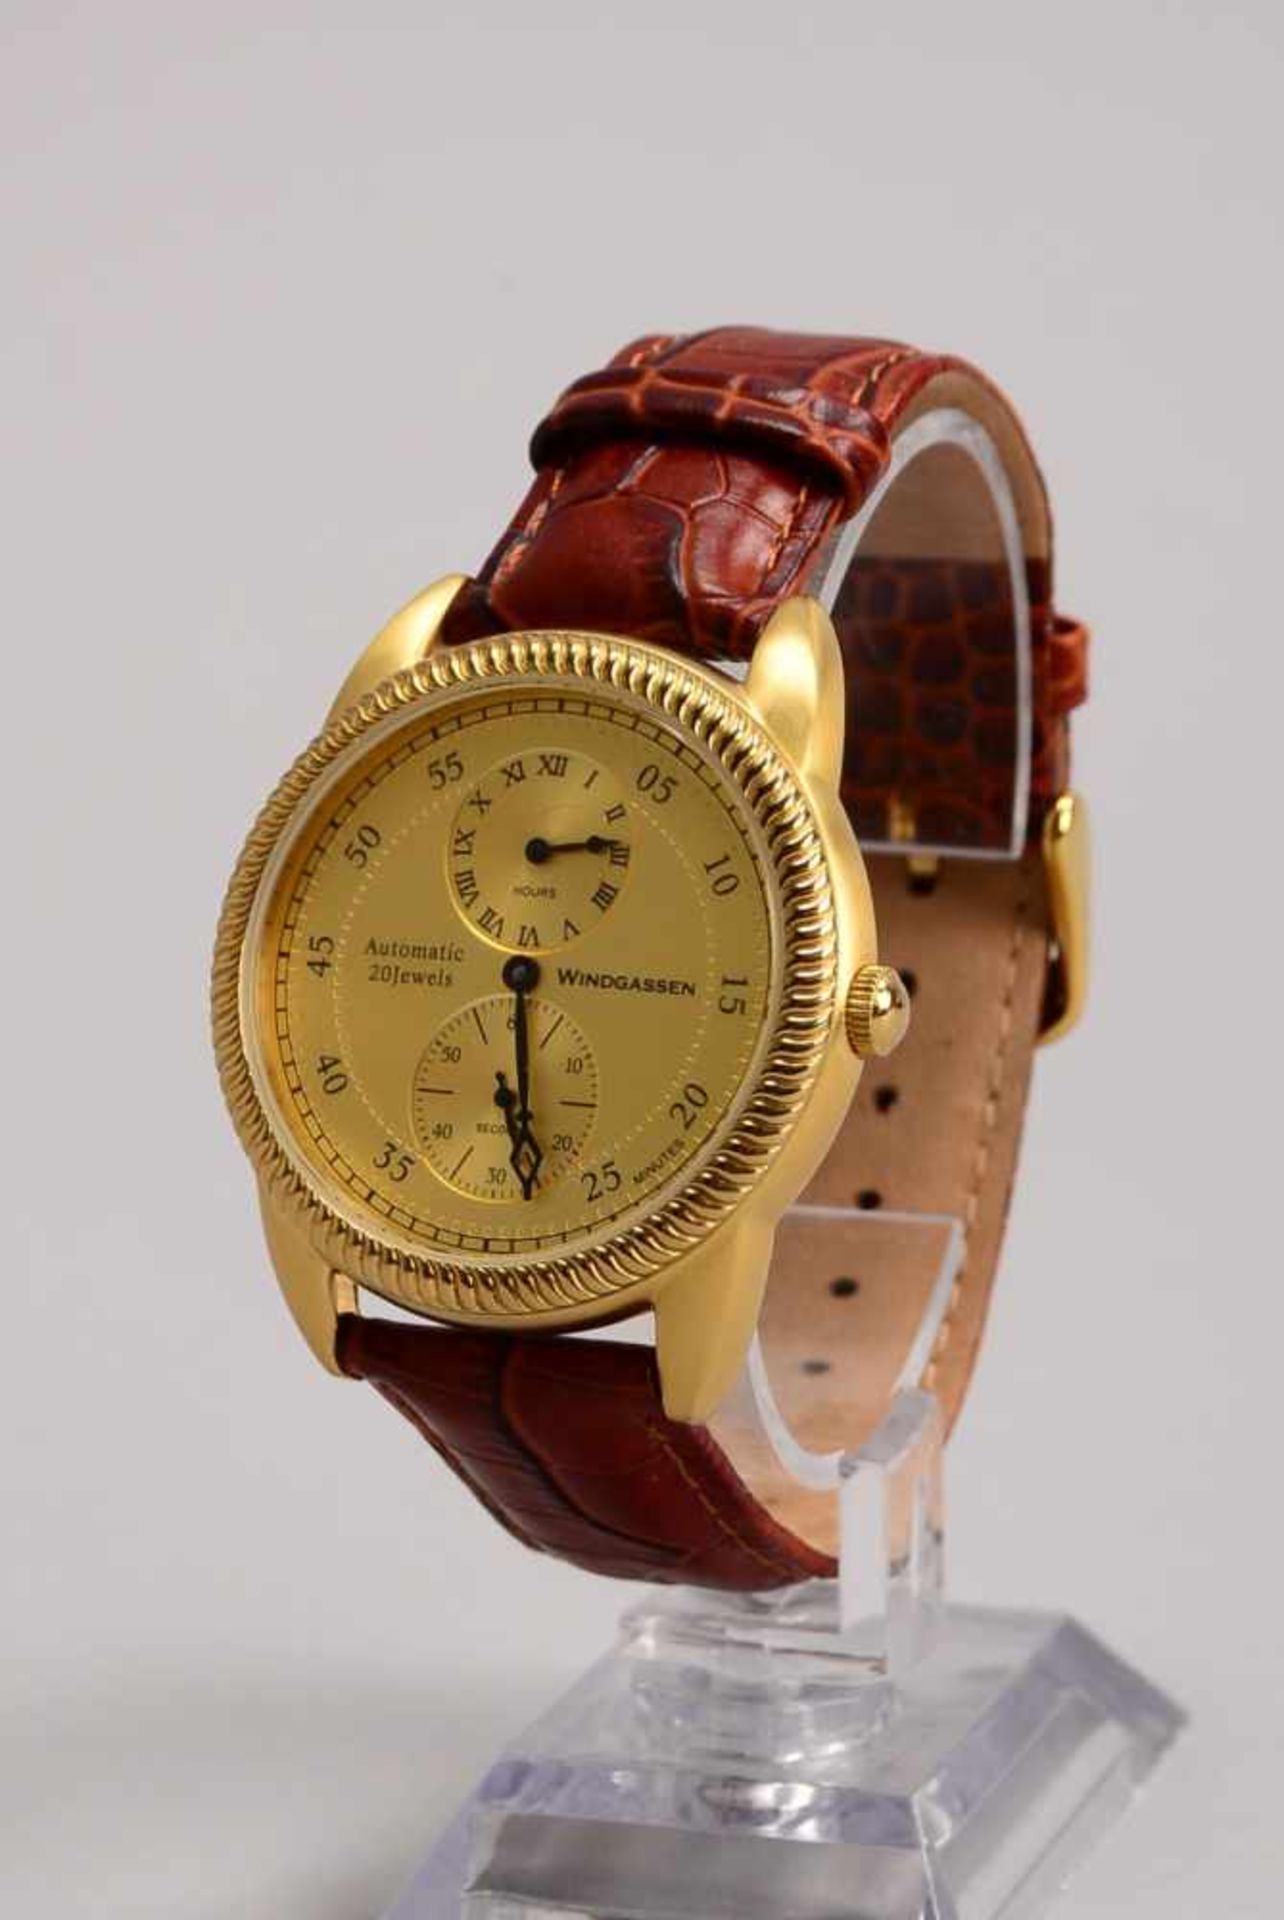 Herren-Armbanduhr, Windgassen, 'Medici', Automatik, Uhr läuft an, in gepflegtem Zustand - Bild 2 aus 2